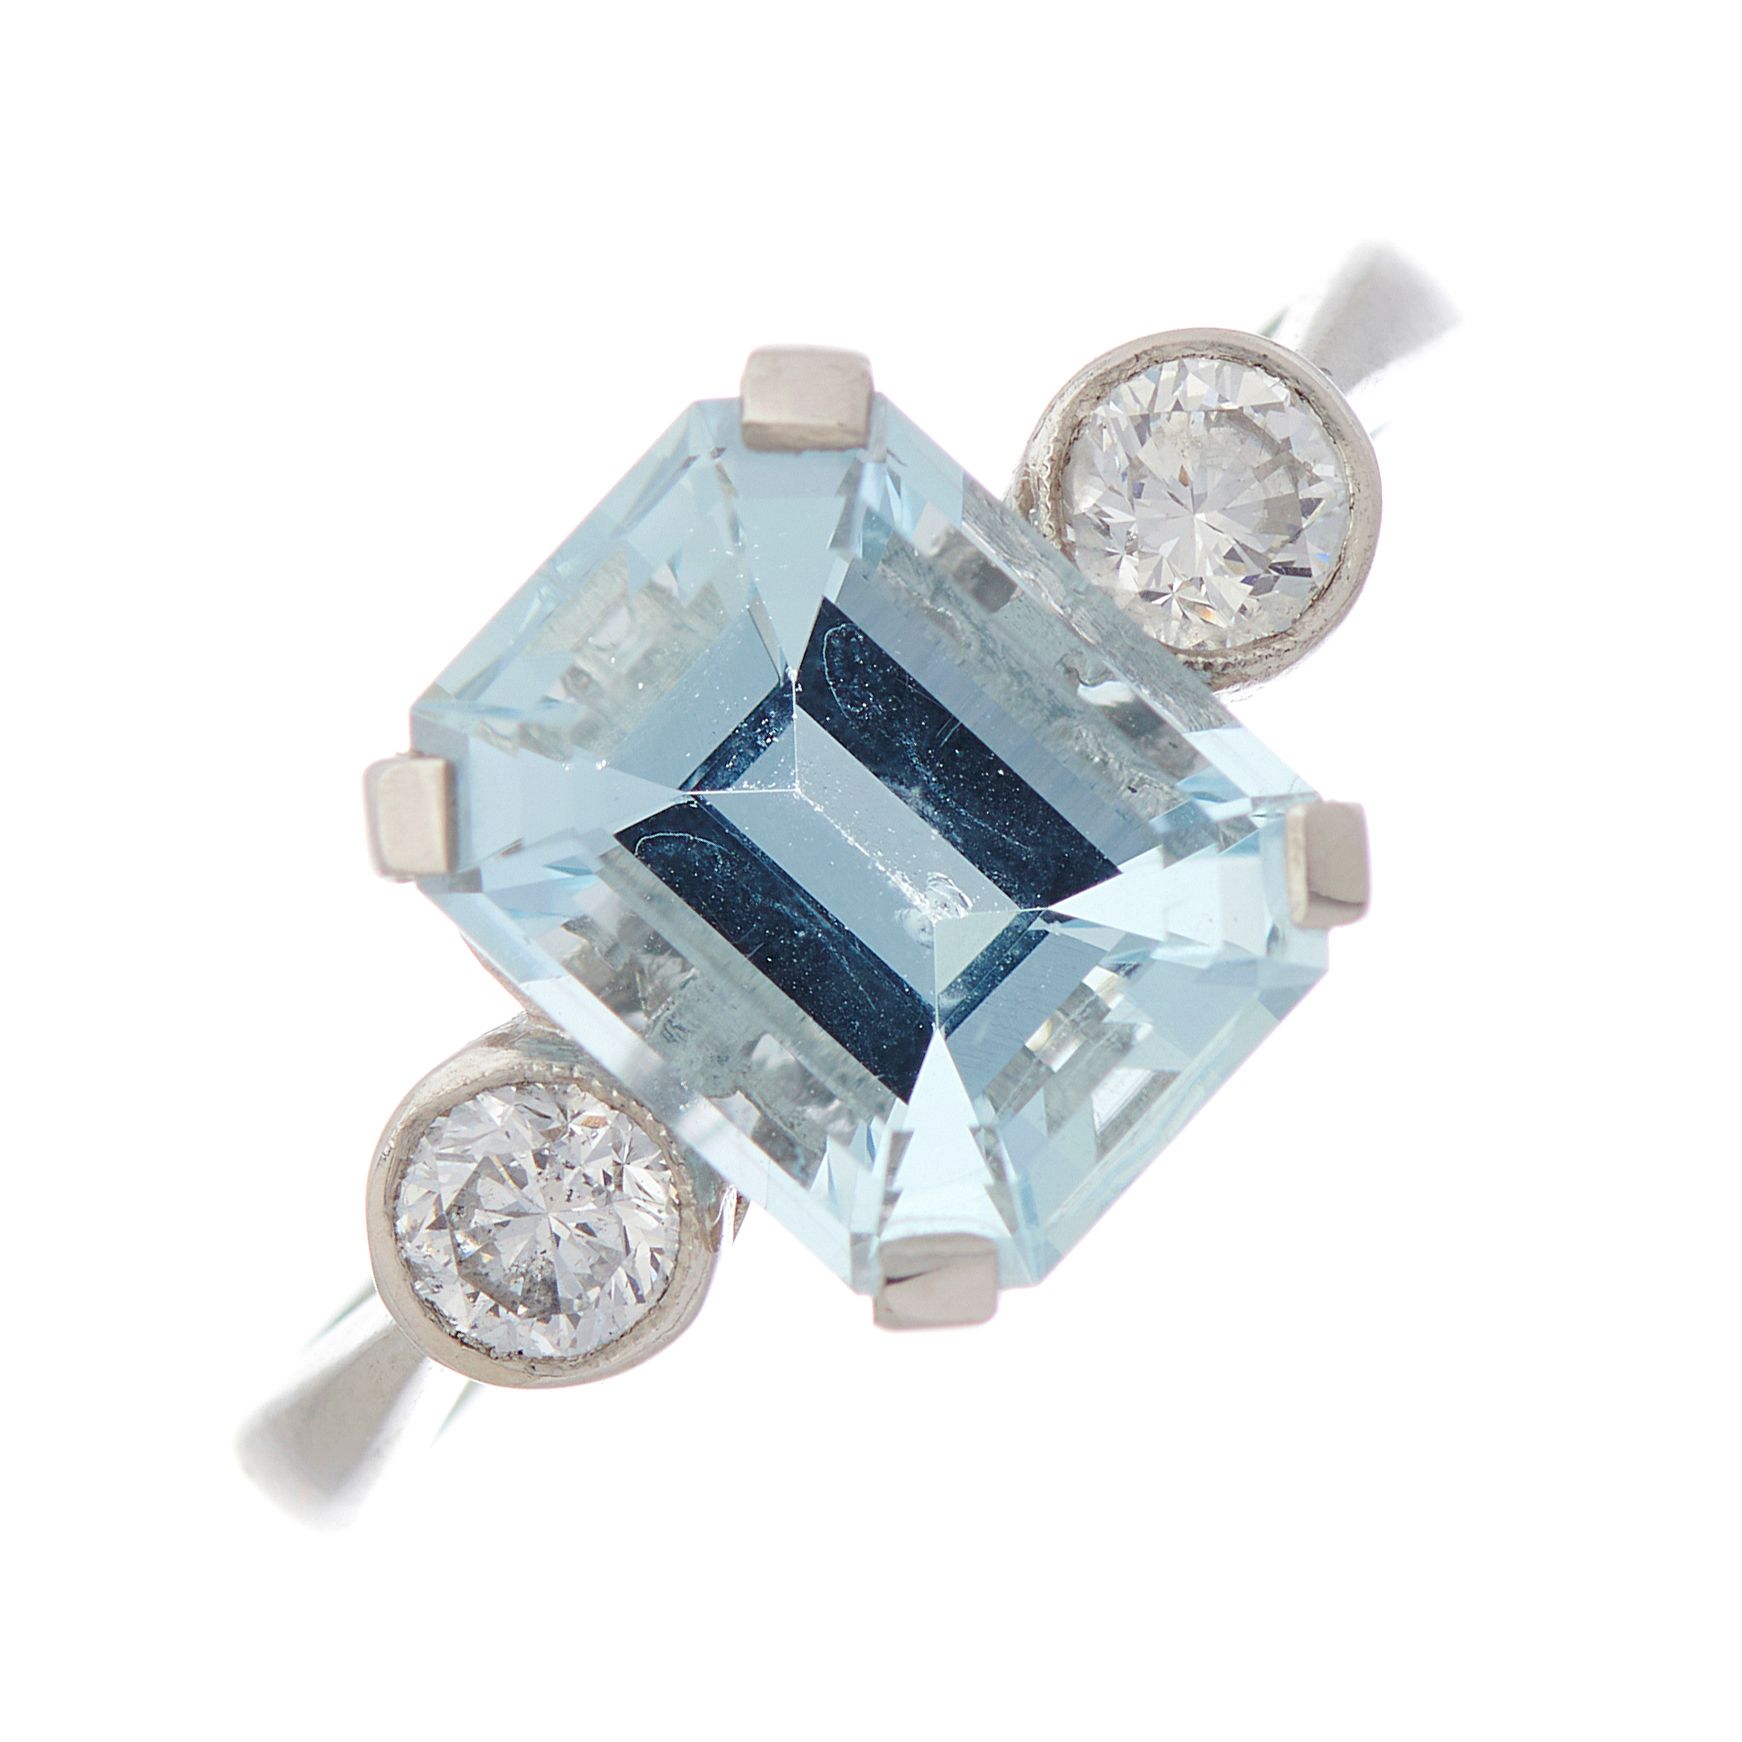 Null 铂金长方形海蓝宝石和明亮式切割钻石三石戒指，海蓝宝石约重2.70克拉，钻石约重0.40克拉，I-J色，SI净度，戒环上印有PLAT，戒指尺寸N1/2，&hellip;